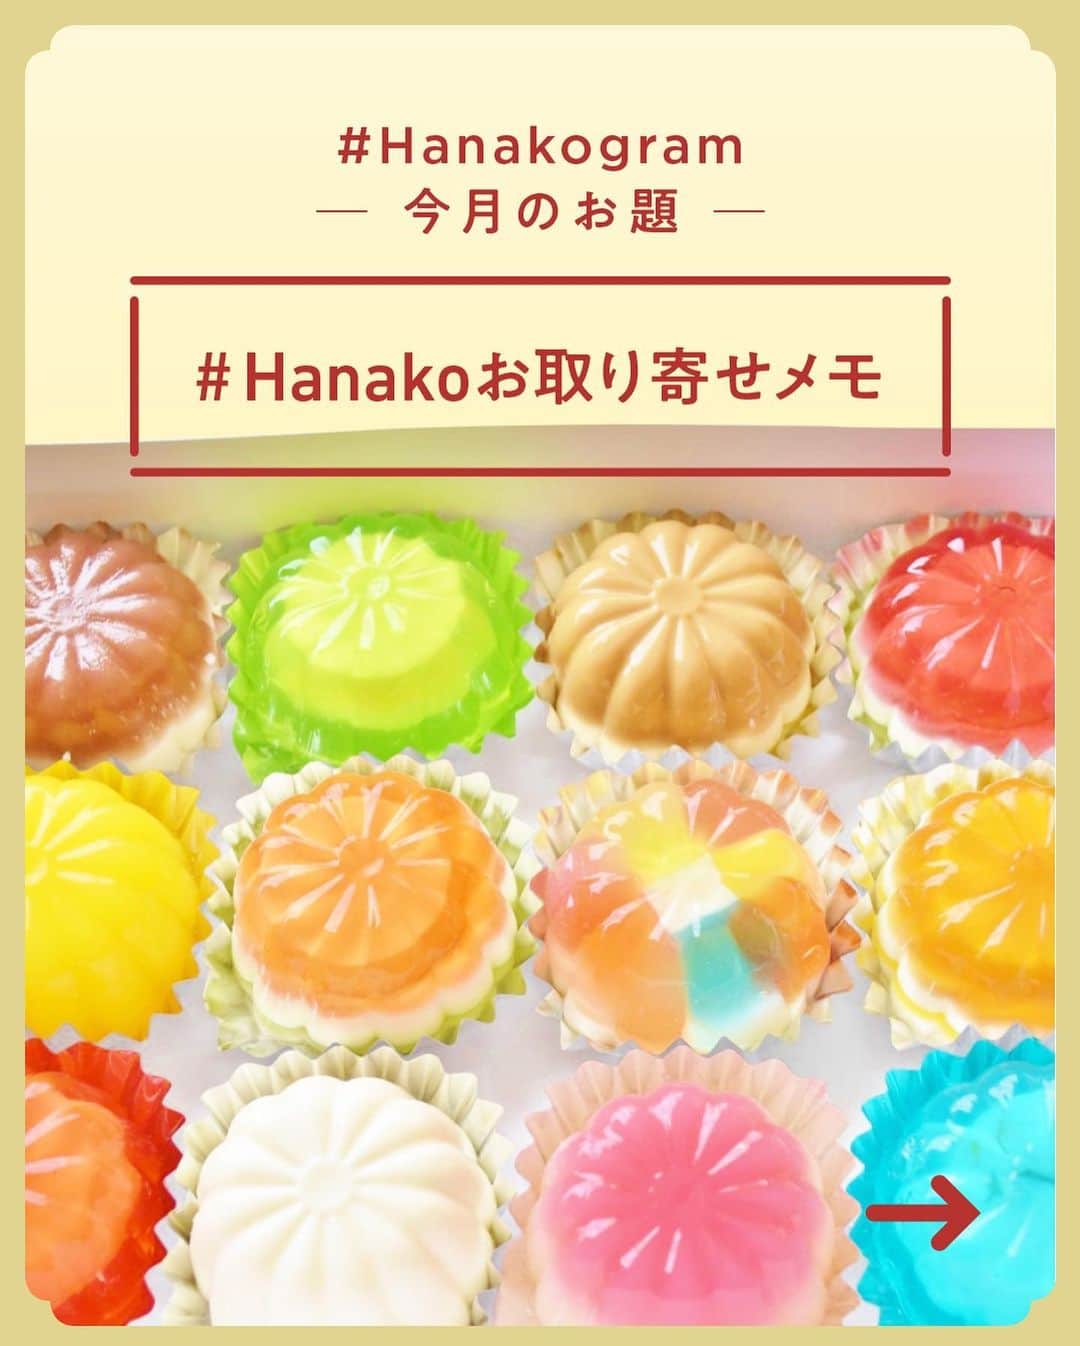 Hanako公式さんのインスタグラム写真 - (Hanako公式Instagram)「#3 Hanakoお取り寄せ図鑑🍒﻿ フードディレクター・野村友里さんがHanakoで連載中の『Good Neighbors,Good Suppliers』。 約6年の連載の中で出会ったお取り寄せ食材をご紹介します。﻿ ﻿ ﻿ 1.〈陰陽洞〉の「生存茶」﻿ 逗子の人気自然食品店〈陰陽洞〉。オリジナ ルの「生存茶」には、はとむぎ、どくだみ、 びわ葉、柿の葉など 8 種の国産野草がブレンドされています。煮出してみるとクセのない優しい味わいに🍂﻿ ﻿ 2.〈青果ミコト屋〉の「野菜お試しセット」﻿ 自然栽培を中心に作られた全国の新鮮野菜を定期宅配。国内の産地を巡り、野菜を楽しむイベントも開催。野菜は一袋ごとに生産者や保存方法、食べ方などの情報が。6〜8種入りのお試しセット1,580円は1回のみ、以降は週1回か隔週、月1回の注文に🍅﻿ ﻿ 3.〈藤野良品店〉の「チョコレート」﻿ 店主は、新たな暮らし方を求め神奈川県旧藤野町の里山に移住。夫が出張先のタンザニアで出合ったカカオ豆を里山の木炭で焙煎し、有機砂糖だけを加えてチョコレートに。カカオの実を表現した形と、藤野の作家による包装も素敵🍫﻿ ﻿ 4.〈鈴廣かまぼこ〉の「切れてる板わさセット」﻿ 小田原に本店がある、天然素材にこだわった蒲鉾の老舗。同社が提案するおいしい厚み、12mmにカットされた「切れてる板わさセット」は、むっちり弾力があり味わい深い。ワサビとオリーブオイルで和洋の風味を楽しんで。🐟﻿ ﻿ 5.〈PARADISE ALLEY BREAD&CO . 〉の「造形パン」﻿ 自家製天然酵母への、あくなき愛にあふれる鎌倉のパン屋さん。イラストやメッセージをのせたアーティスティックな「造形パン」は、ギフトにもぜひ。オーダーは予算から相談可能(配送希望日の10日前までに要連絡)🥪﻿ ﻿ 6.〈邦栄堂製麺〉の「生中華麺」﻿ 鎌倉にある町の製麺所。67年続くシンプルな麺たちは、どこか懐かしい食感と香り。細麺や平太麺などお好みのスープで素ラーメンを楽しんでみて🍜﻿ ﻿ 7.〈なでしこ農園〉の「バルサミコ」﻿ 収穫から熟成まで自らの手で。糖度の高いモストコット(原料となる果汁を煮詰めたもの)により果実味が豊かに。熟成の年月が異なる二本の違いを楽しんで🥄﻿ ﻿ ﻿ 8.〈小笠原味淋醸造〉の「本みりん」﻿ 佐賀県の上質なもち米と自家製の麹、焼酎を原料に、大正11(1922)年の創業時から変わらぬ製法で造り続ける。4年間熟成させたみりんは上品な甘味があり、そのまま飲んでもおいしい🌾﻿ ﻿ 9.〈Nomadic Kitchen〉の「Nomadic Salt」﻿ 野村友里さんやイタリアンレストラン〈CignaleENOTECA〉の東森俊二さんら、料理人たちによるプロジェクトから生まれた商品。和歌山の特産品である山椒とゆずを合わせた、ピリリと刺激的な味🧂﻿ ﻿ 10.〈山利〉の「釡あげしらす」﻿ 潮の流れが速い紀伊水道で獲れた、身の引き締まったしらすを赤穂の天塩のみを使って釡あげに。シンプルな食材・製法ゆえに、新鮮であることを追求し、水揚げしたらすぐに加工場で茹であげるそう🎣﻿ ﻿ 11.〈滝川農園〉の「梅肉」﻿ 完熟して木から落ちたものや落ちる寸前の南高梅を木樽で仕込んだ「白干梅」を、手間を惜しまず裏ごししてペーストに。チューブ入りの使い勝手の良さで、おにぎりや和え物などに活躍。野村さんの定番品🍑﻿ ﻿ 12.〈堀河屋野村〉の「徑山寺味噌」﻿ 鎌倉時代から受け継いでいる味。地元産のなすやしそ、生姜などの夏野菜を大豆、麦、米などと一緒に仕込む。仕込んで1年未満の「新物」と、1年以上深く浸かった「熟成」の2種類から選べる。お茶請けやおにぎりの具材に🍙﻿ ﻿ 13.〈祇園むら田〉の「煎りごま・練りごま」﻿ 特製の機械でごまの皮をむいてから炒るため独特の力強い香りが楽しめる。すりこぎですると、このごまの実力をより感じることができるはず。練りごまも油分が高くクリーミー🥛﻿ ﻿ 14.〈krater winestore〉の「サングリアの素」﻿ 京都近郊で作られている旬の果物に、シナ モンなどのスパイスを加え、煮詰めてから瓶詰めに。ワインで割ると、季節のサングリアが完成する。赤、白どちらで割ってもおいしい🍷﻿ ﻿ _______________________________________﻿ ﻿ ＼ #Hanakogram 投稿募集中！／﻿ 📌参加方法はスワイプしてチェック！﻿ 期間は2020/7/10〜2020/8/9です。﻿ ﻿ _______________________________________﻿ ﻿ ﻿ 【Hanako1186号_2020年の今こそ取り寄せたいもの発売！】﻿ #Hanako #Hanako_magazine #stayhome #おうち時間 #おこもり #ポジティブおこもり #日々の暮らしを楽しむ #丁寧な暮らし #おうちカフェ」7月25日 22時59分 - hanako_magazine